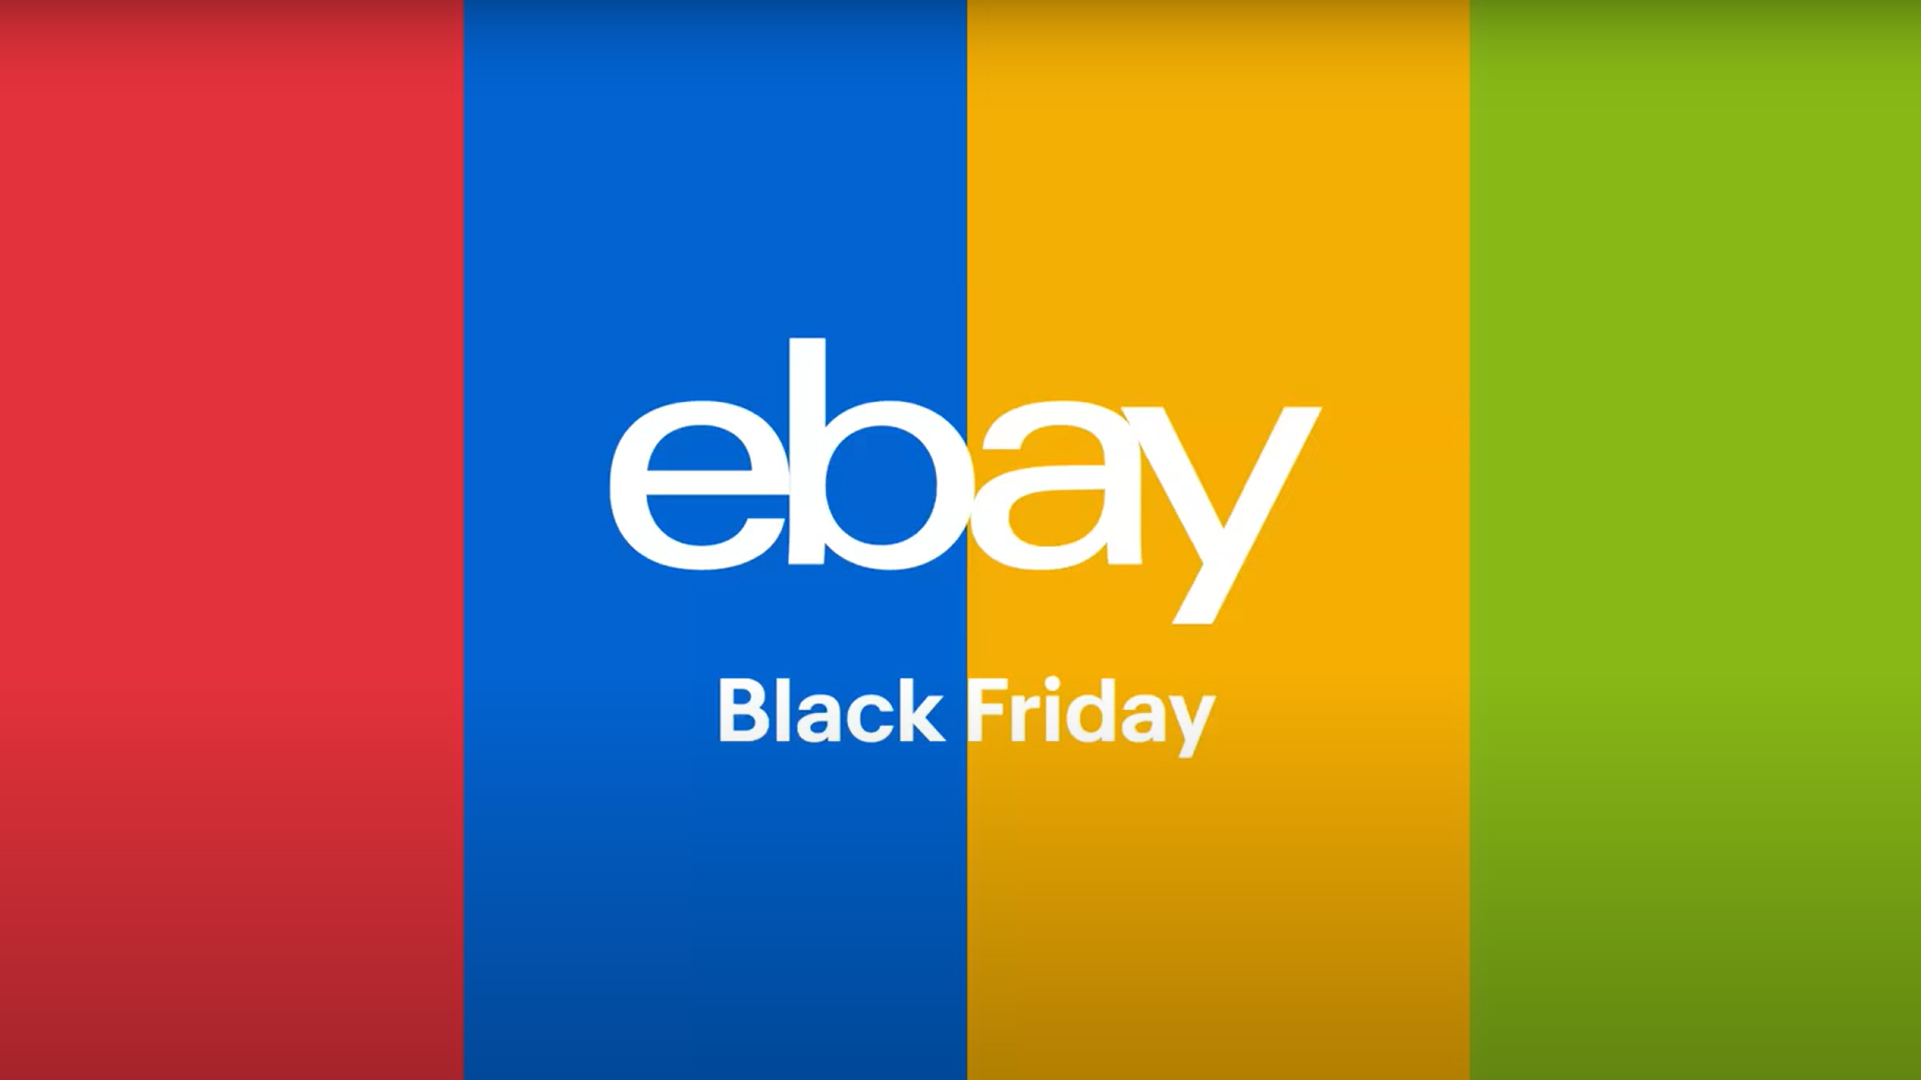 ebay logo striped background